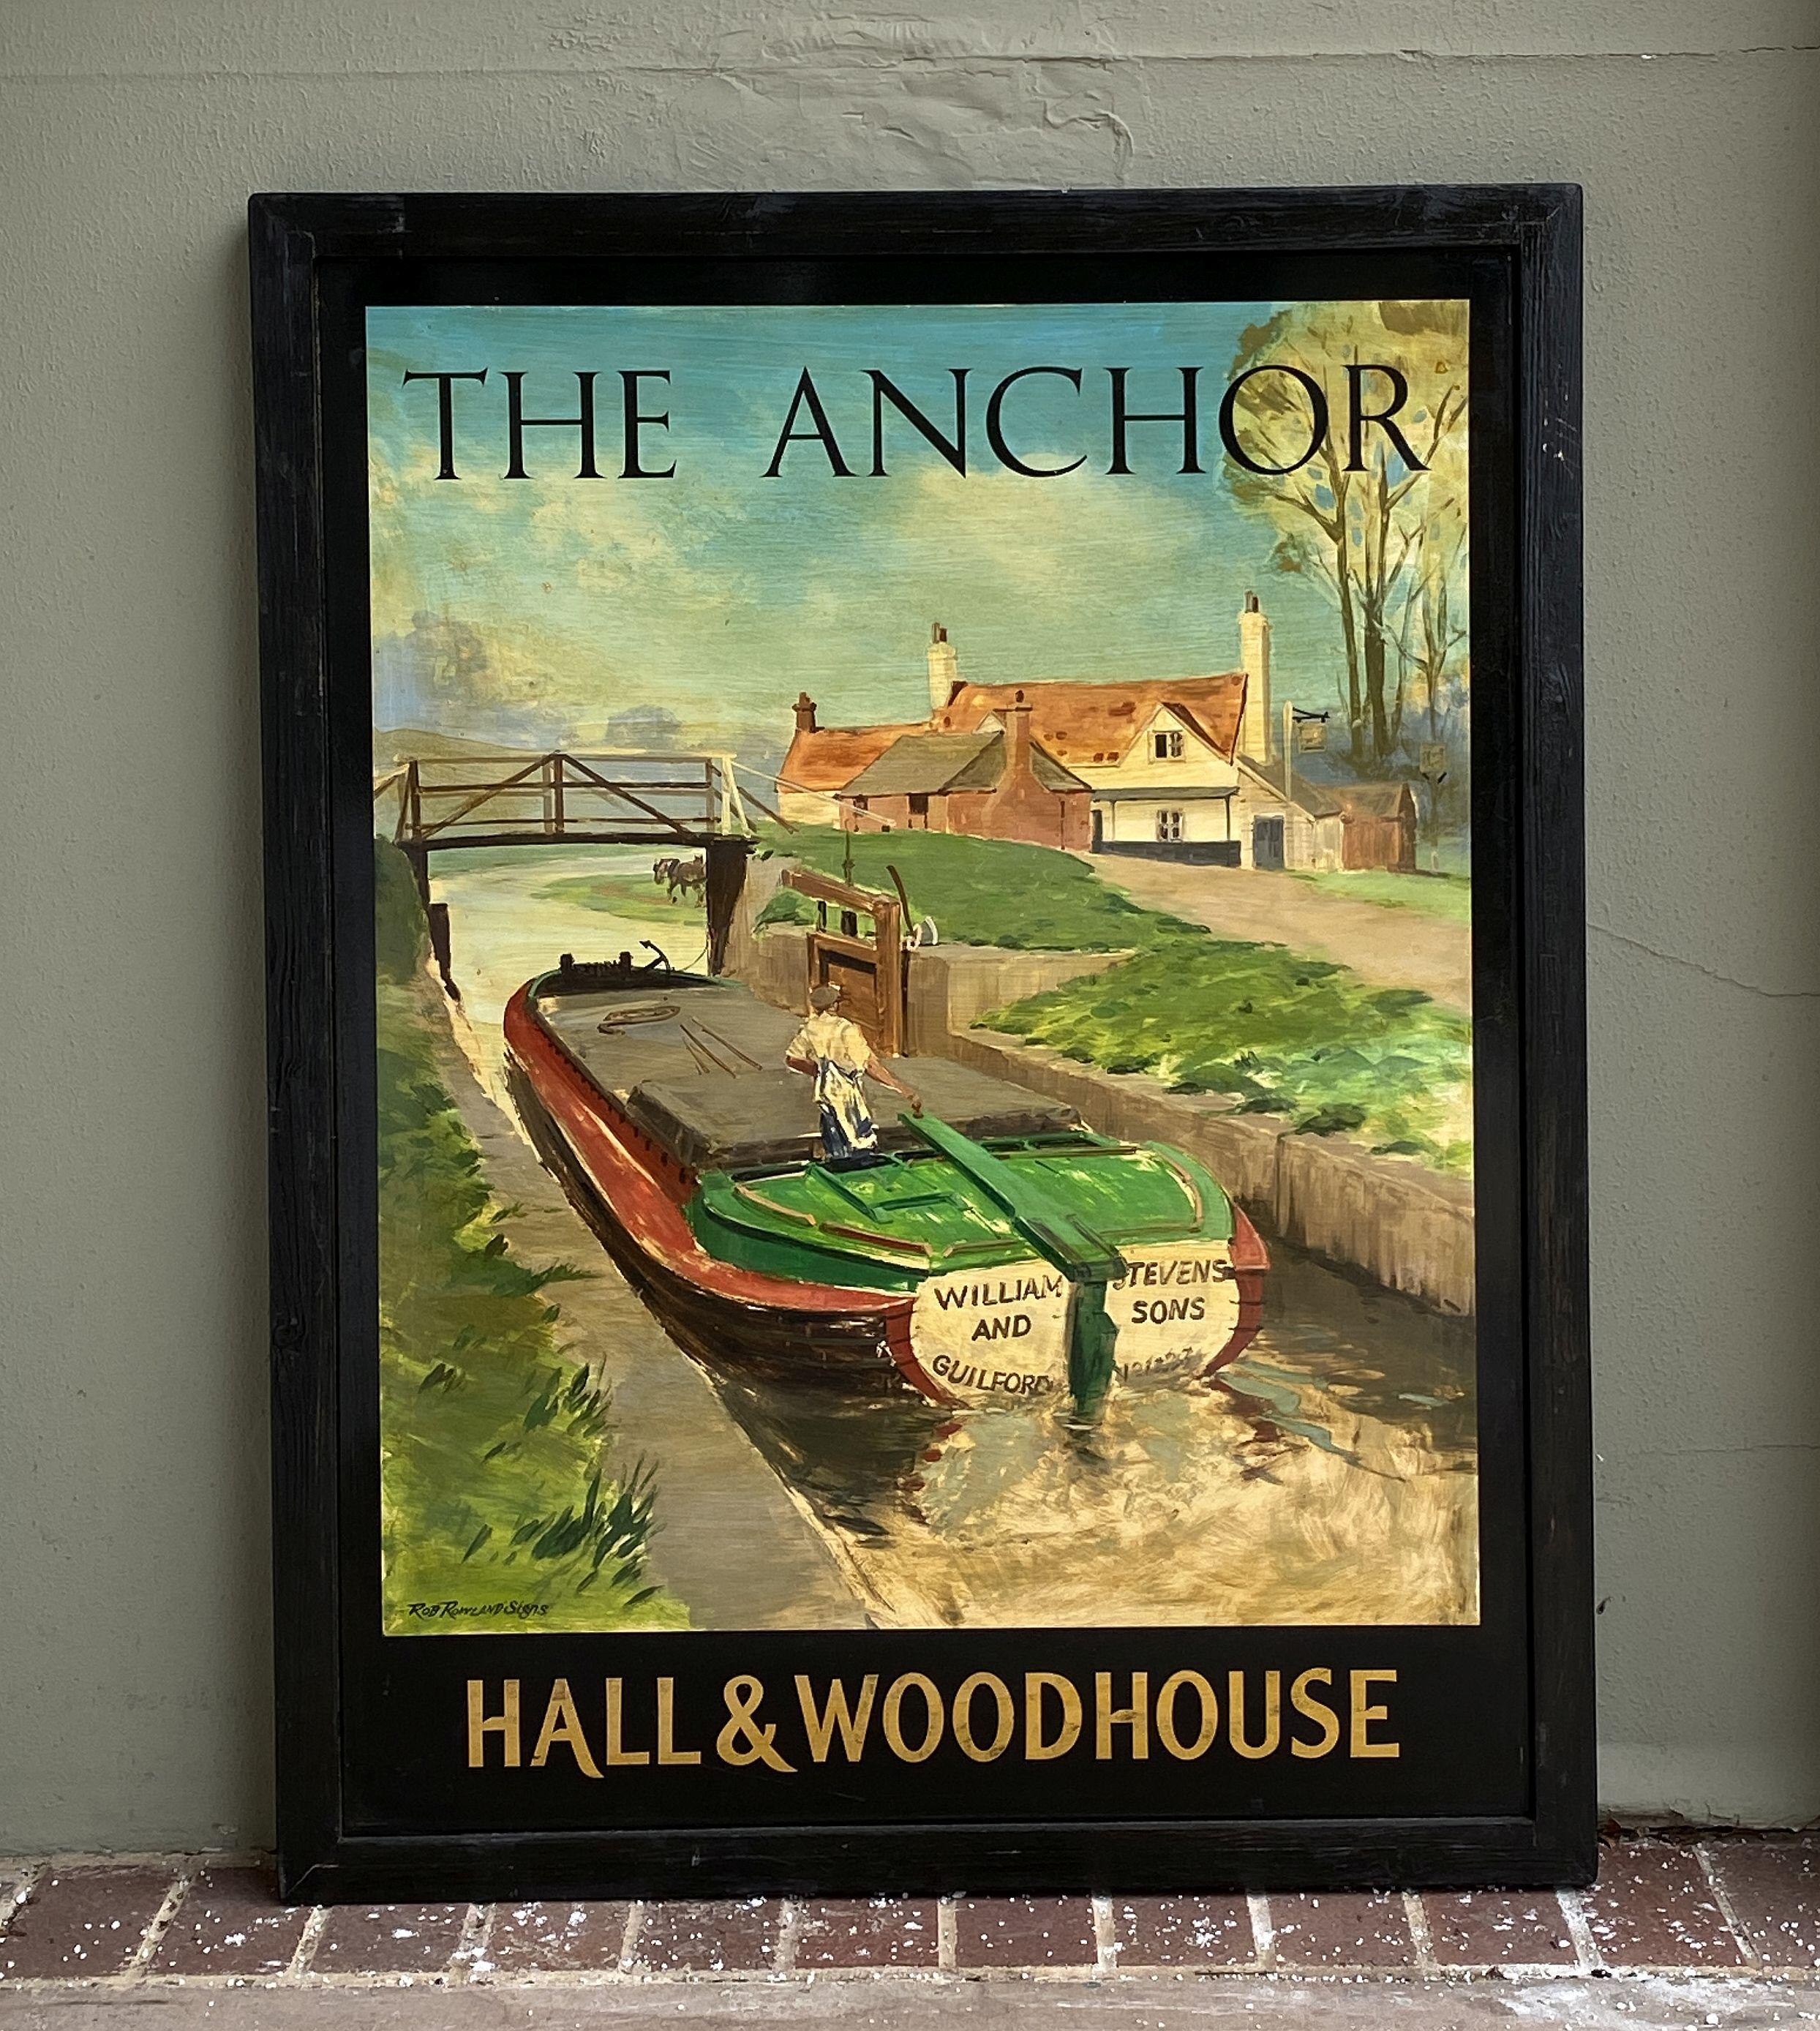 Authentique enseigne de pub anglais (unilatérale) représentant une péniche naviguant sur un canal, intitulée : The Anchor - Hall & Woodhouse.

Un très bel exemple d'œuvre d'art publicitaire vintage, prête à être exposée.

Hall and Woodhouse est une